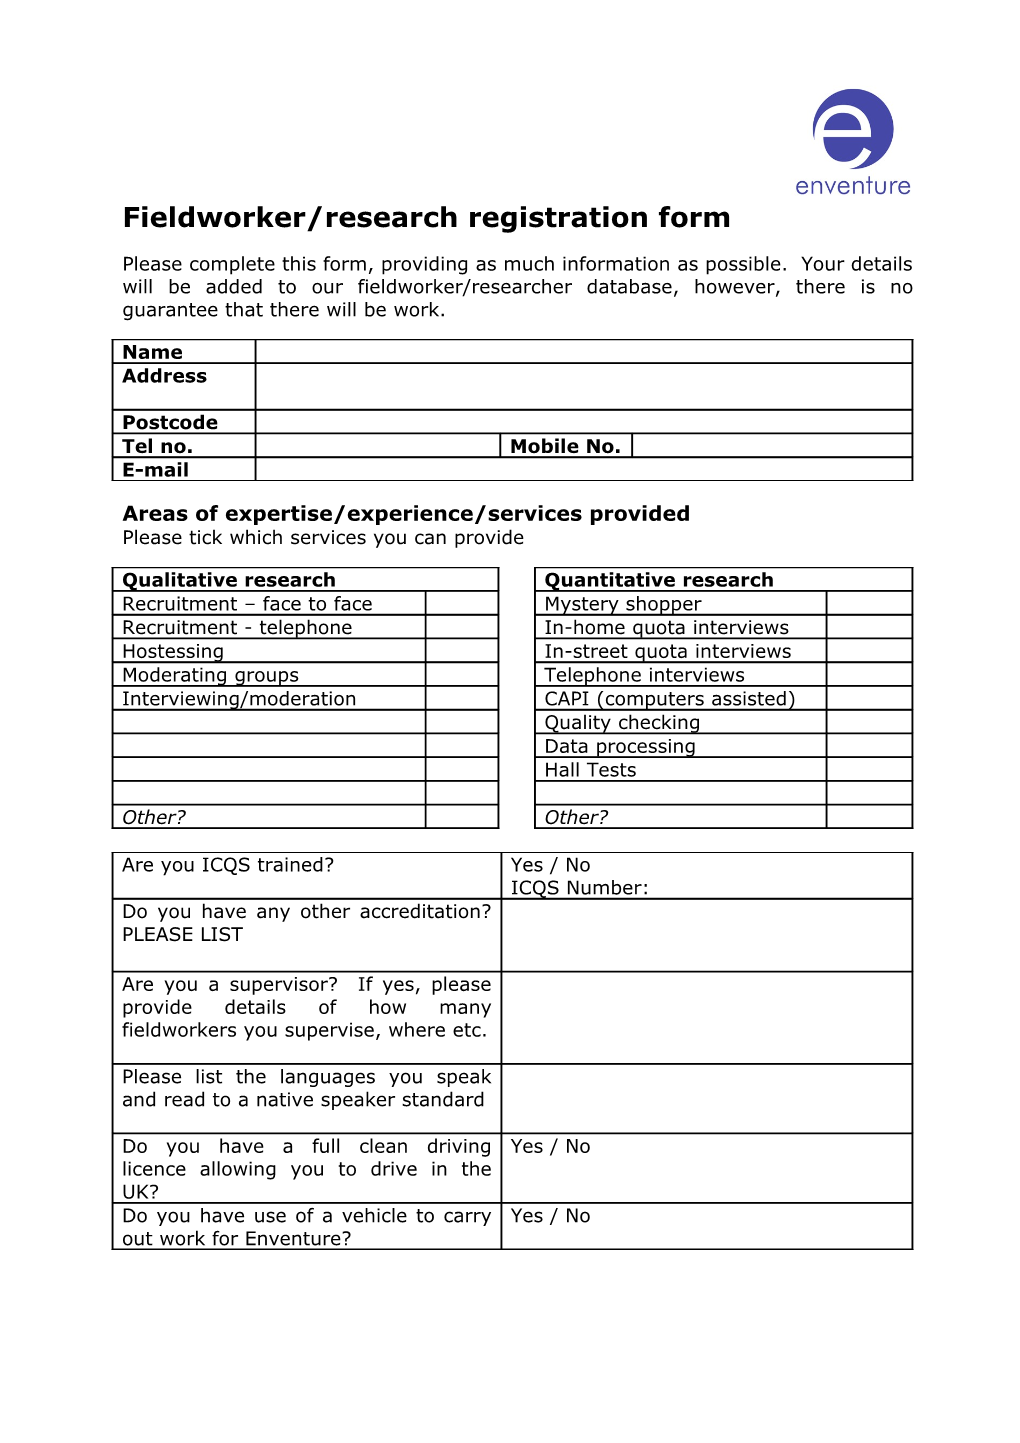 Fieldworker/Research Registration Form